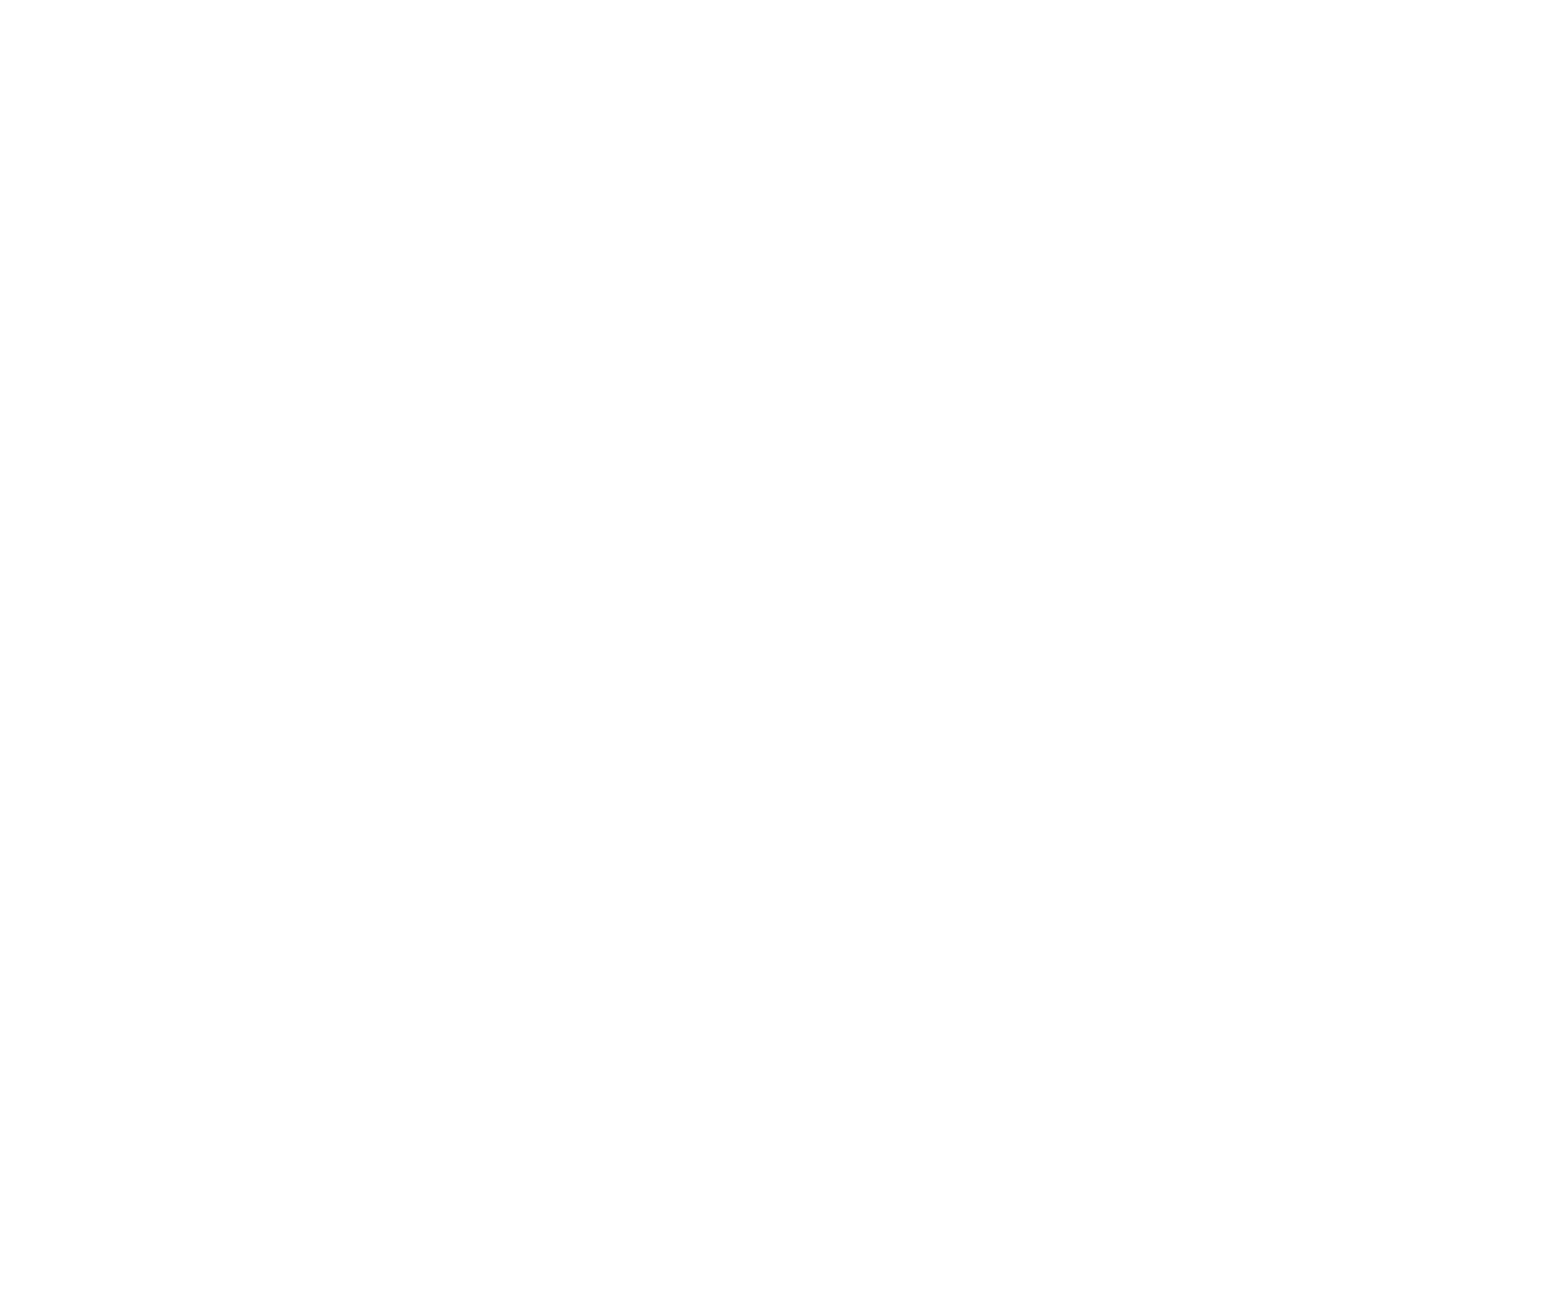 Frontier Airlines logo pour fonds sombres (PNG transparent)